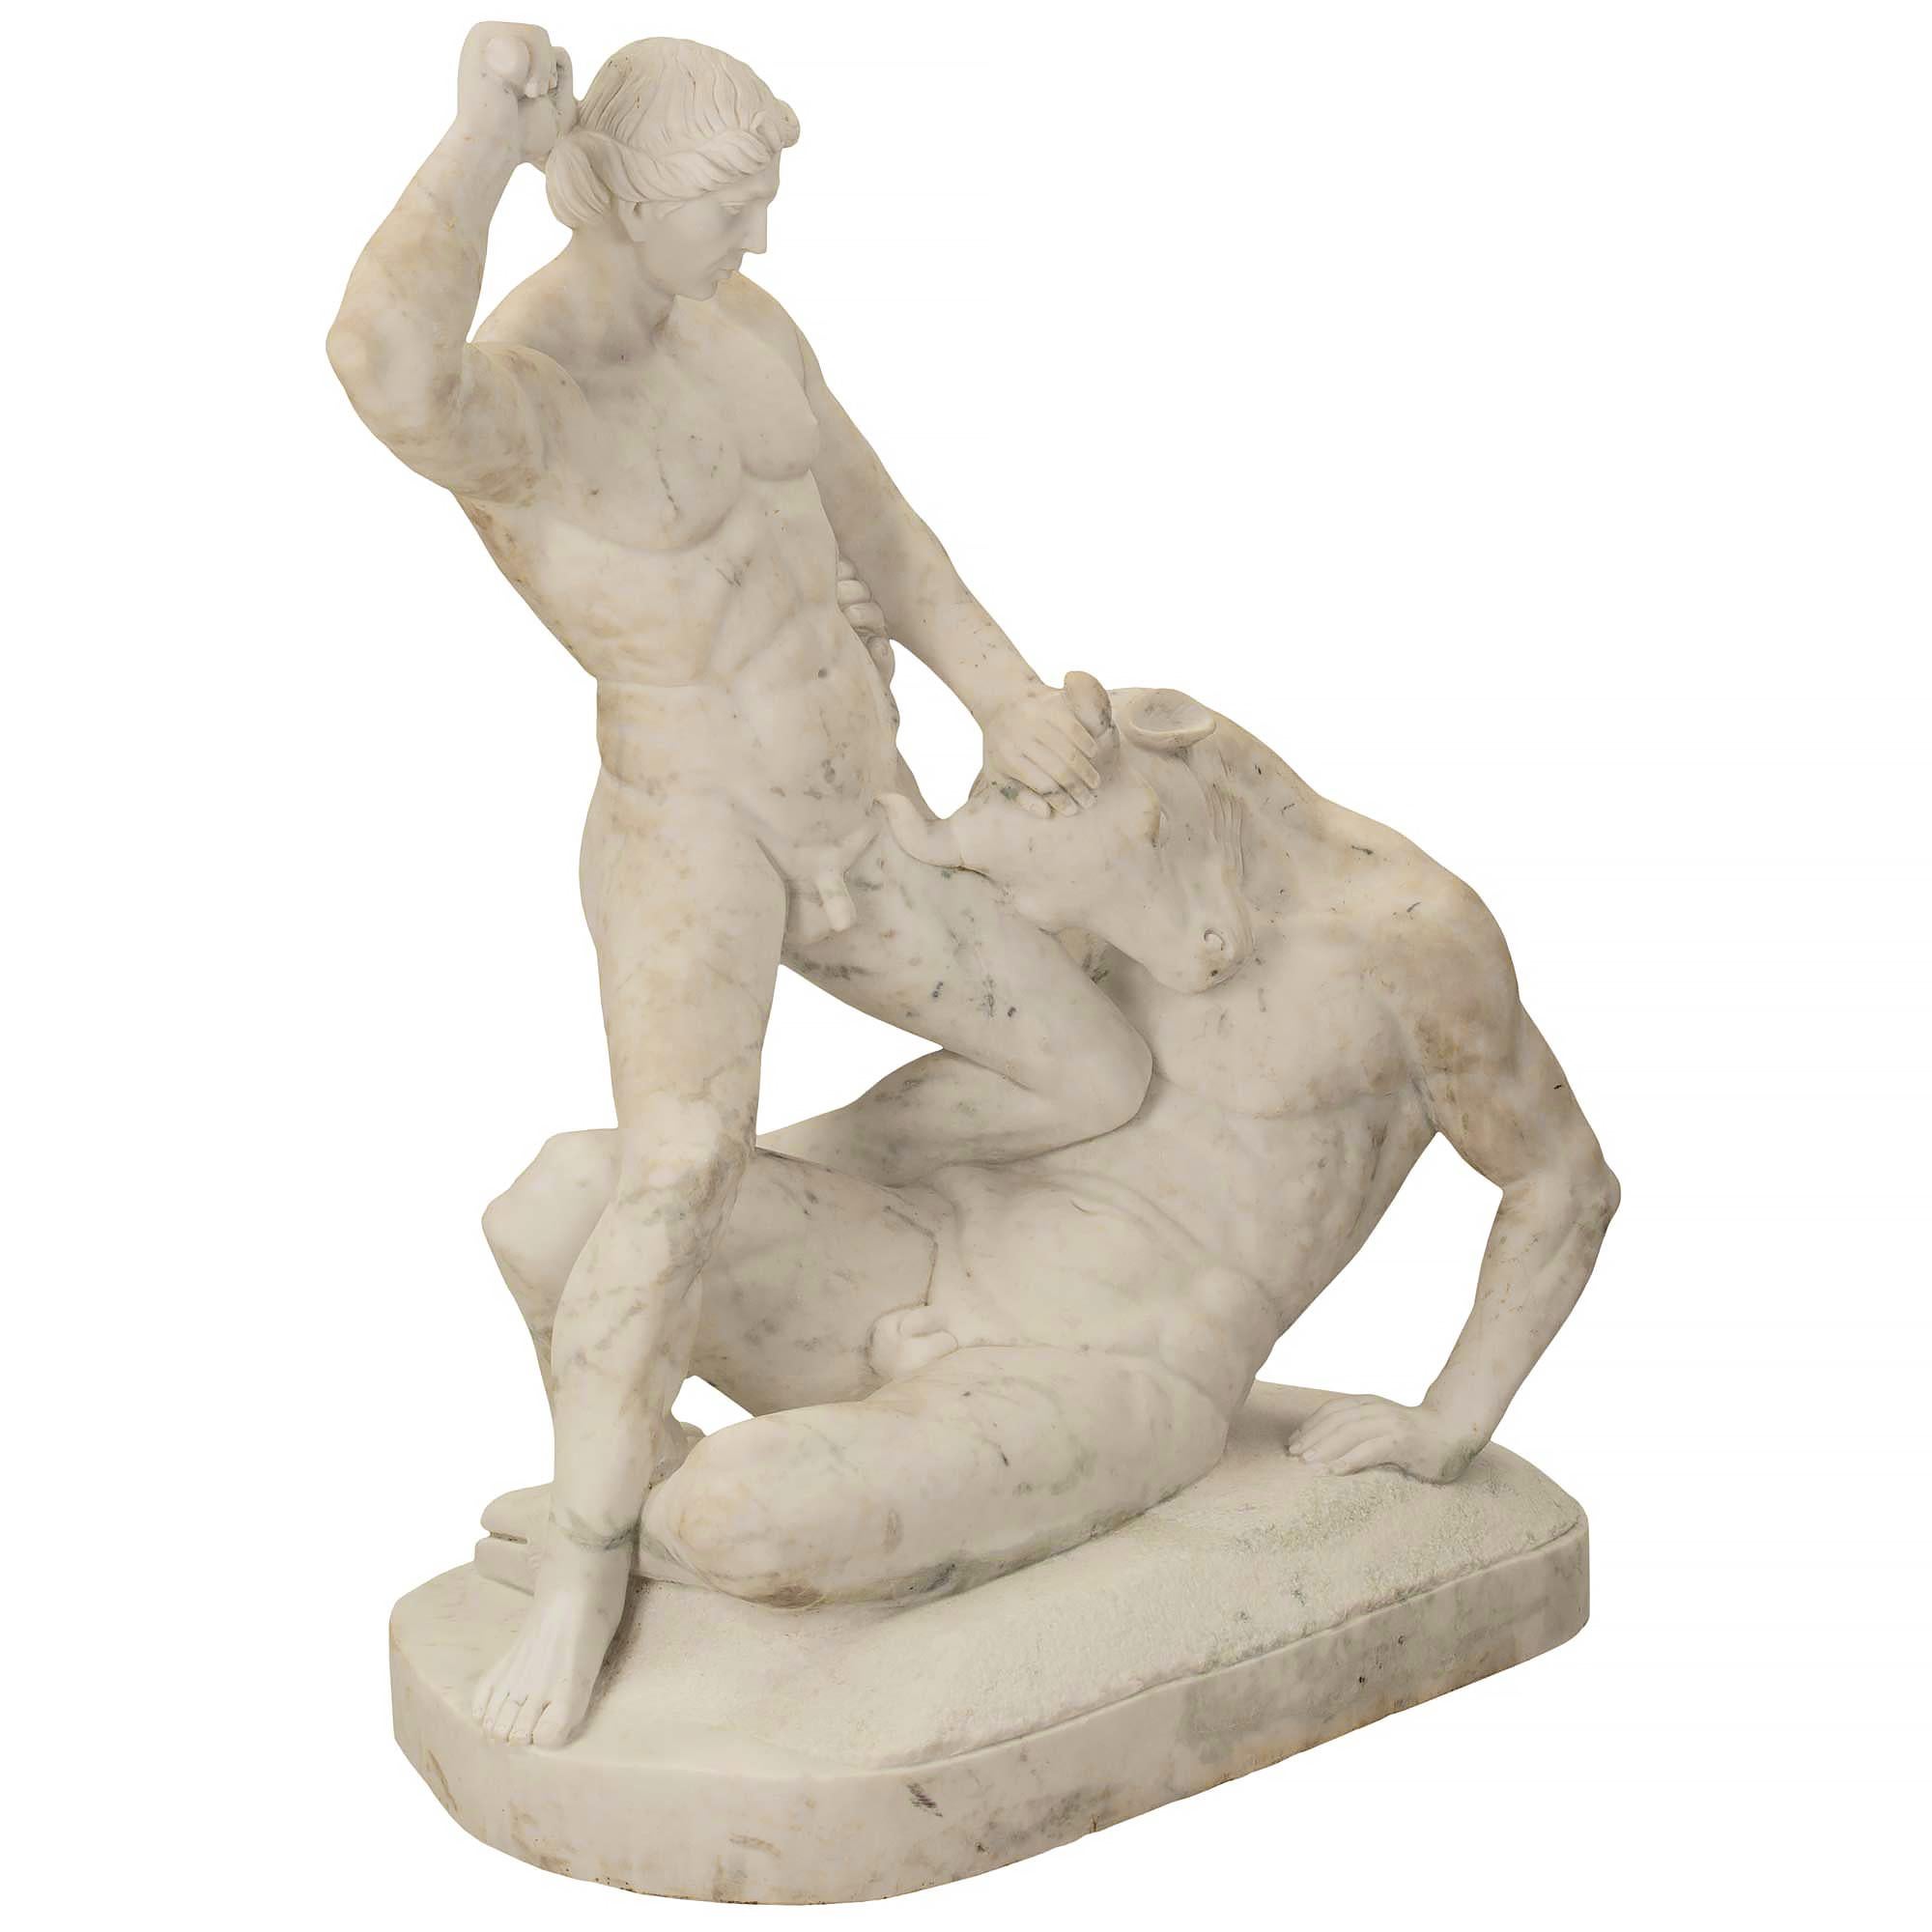 Eine sehr schöne italienische Statue aus weißem Carrara-Marmor aus dem 19. Jahrhundert, die Theseus und den Minotaurus darstellt. Die Statue steht auf einem ovalen Sockel, auf dem der Minotaurus in seiner Niederlage liegt, während Theseus bereit